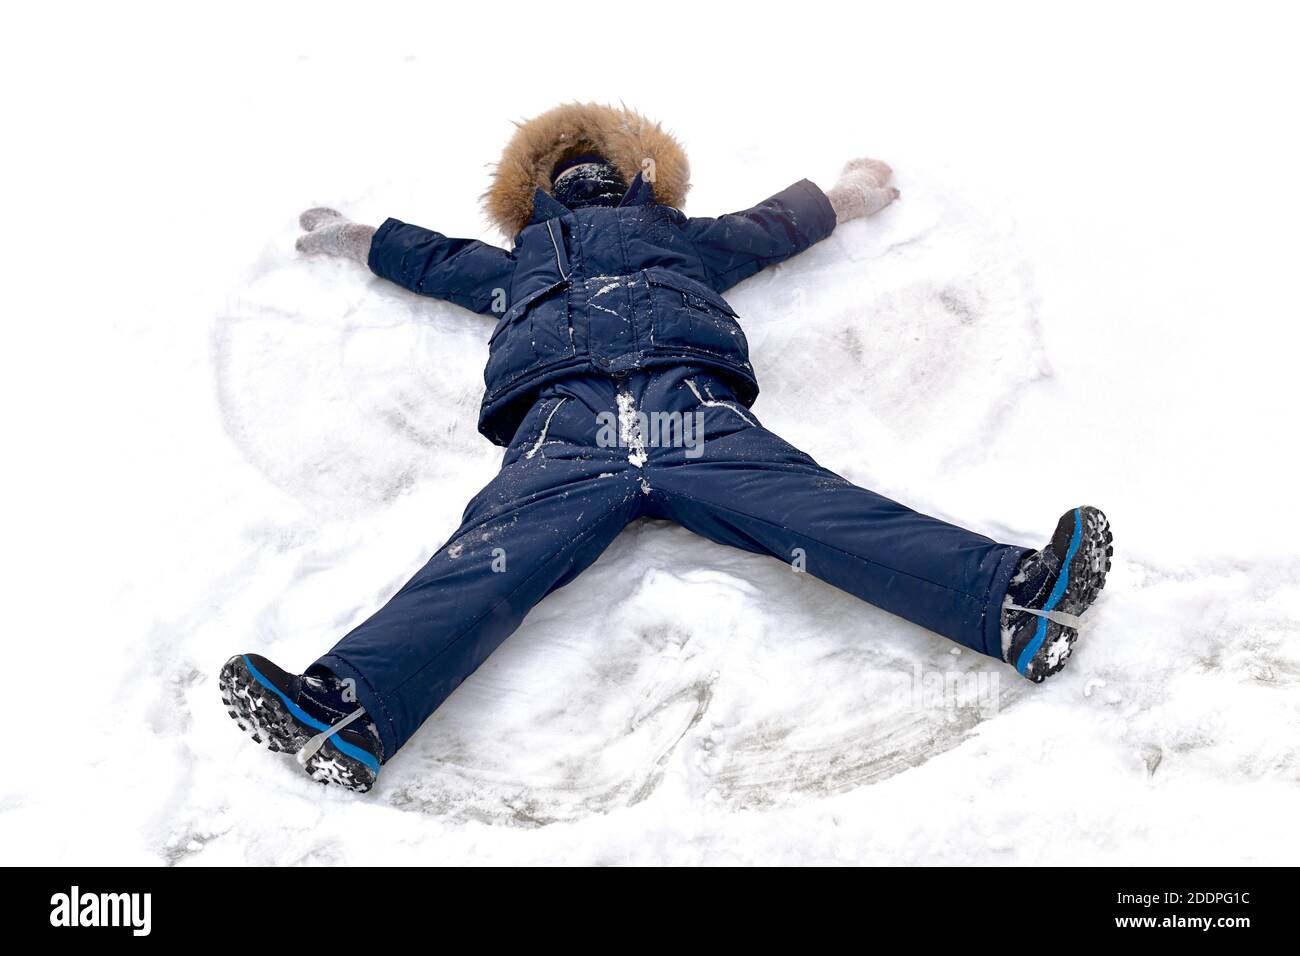 Der schneeanzug Ausgeschnittene Stockfotos und -bilder - Alamy